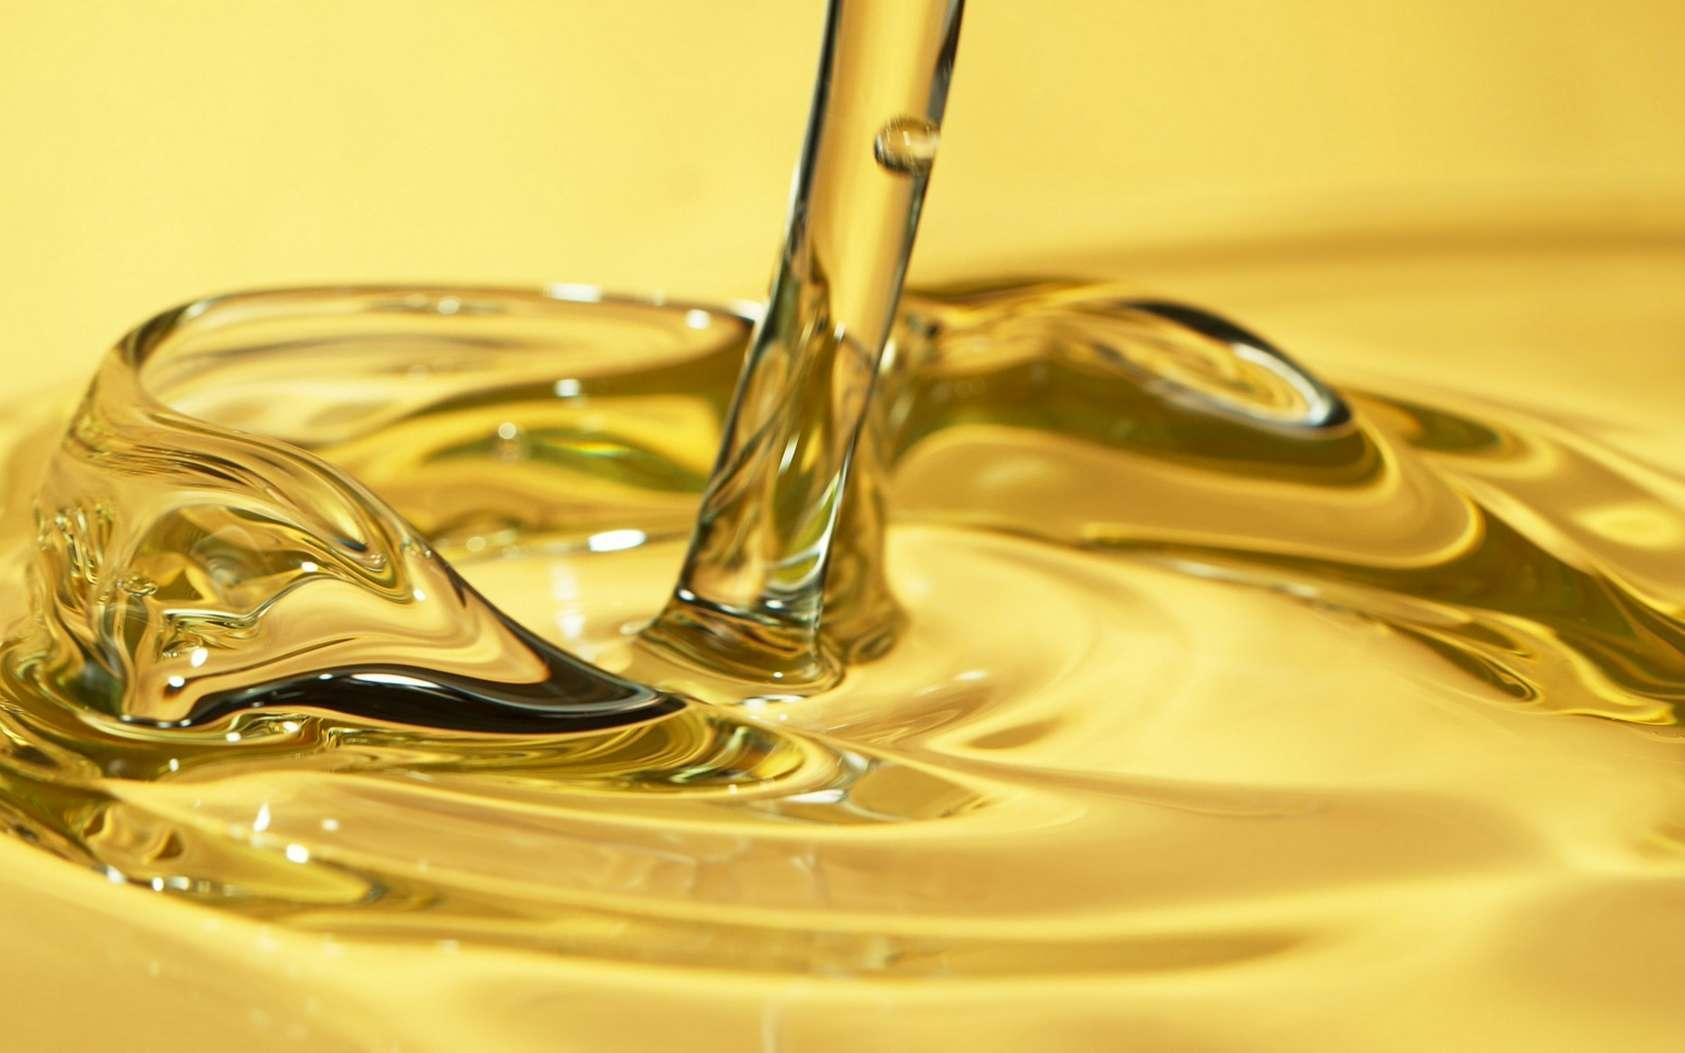 De l’huile de friture comme carburant, c’est pour bientôt ?